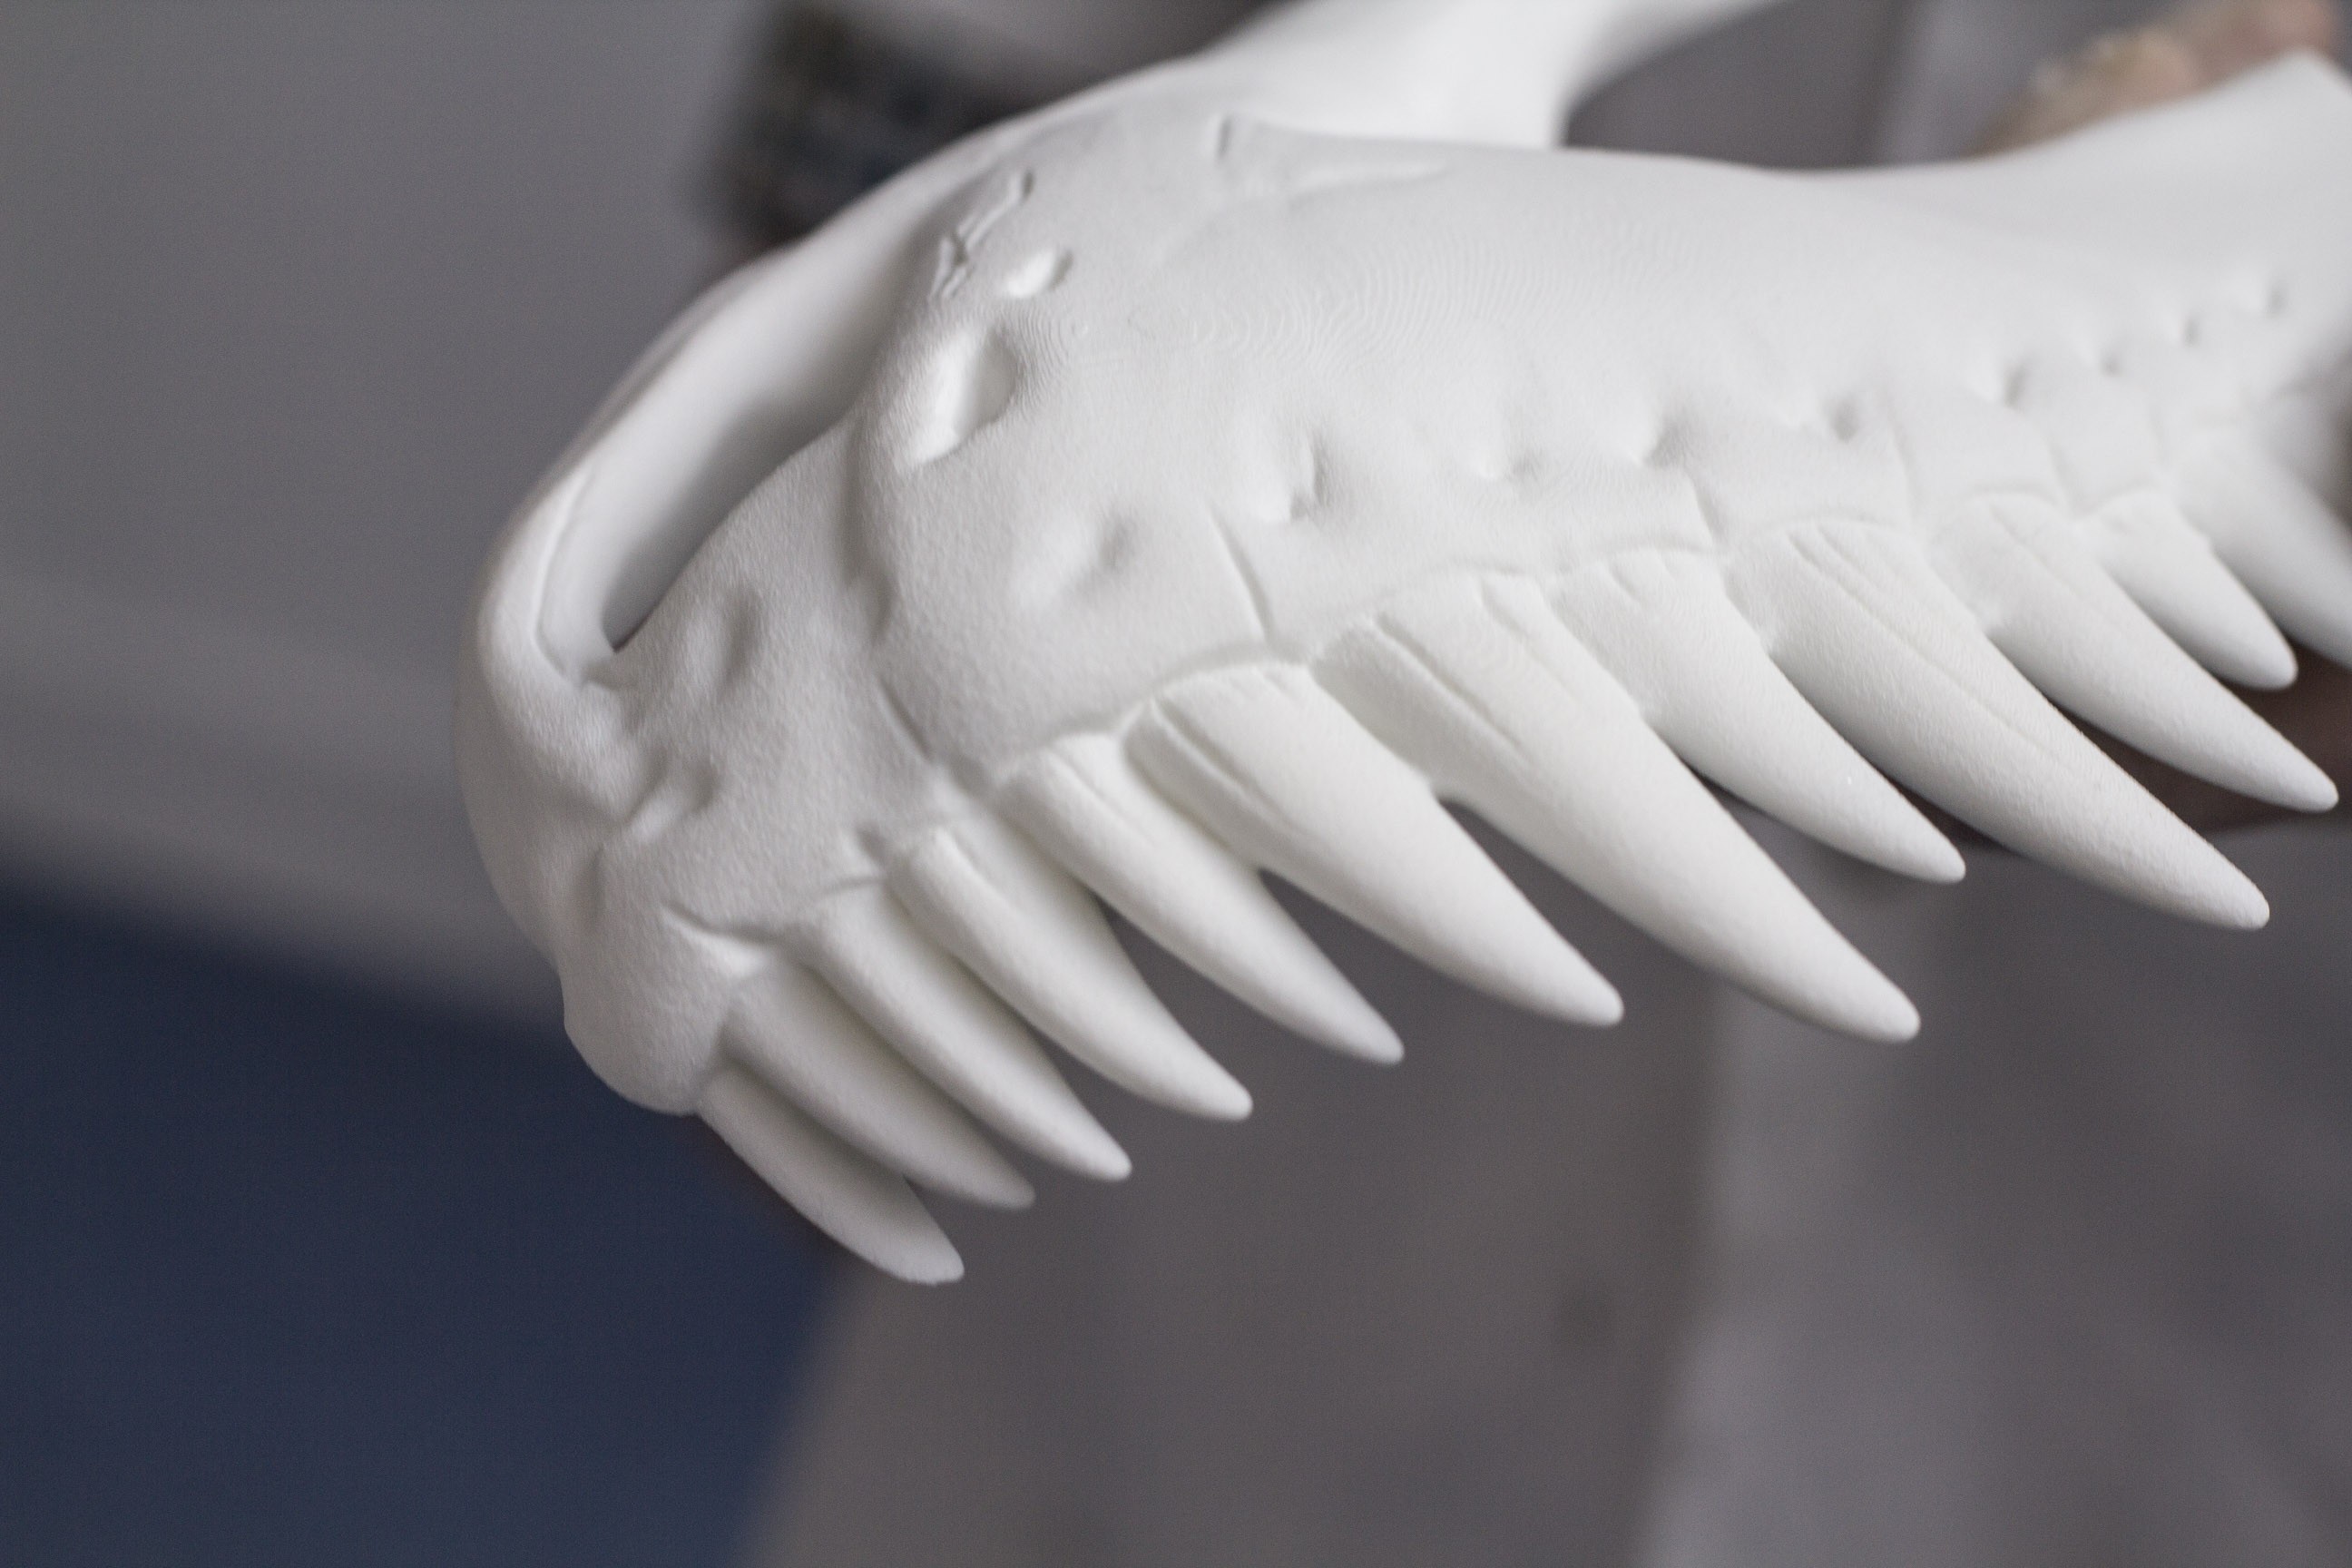 3D Print Dinosaur Skull using SLS 3D Printer